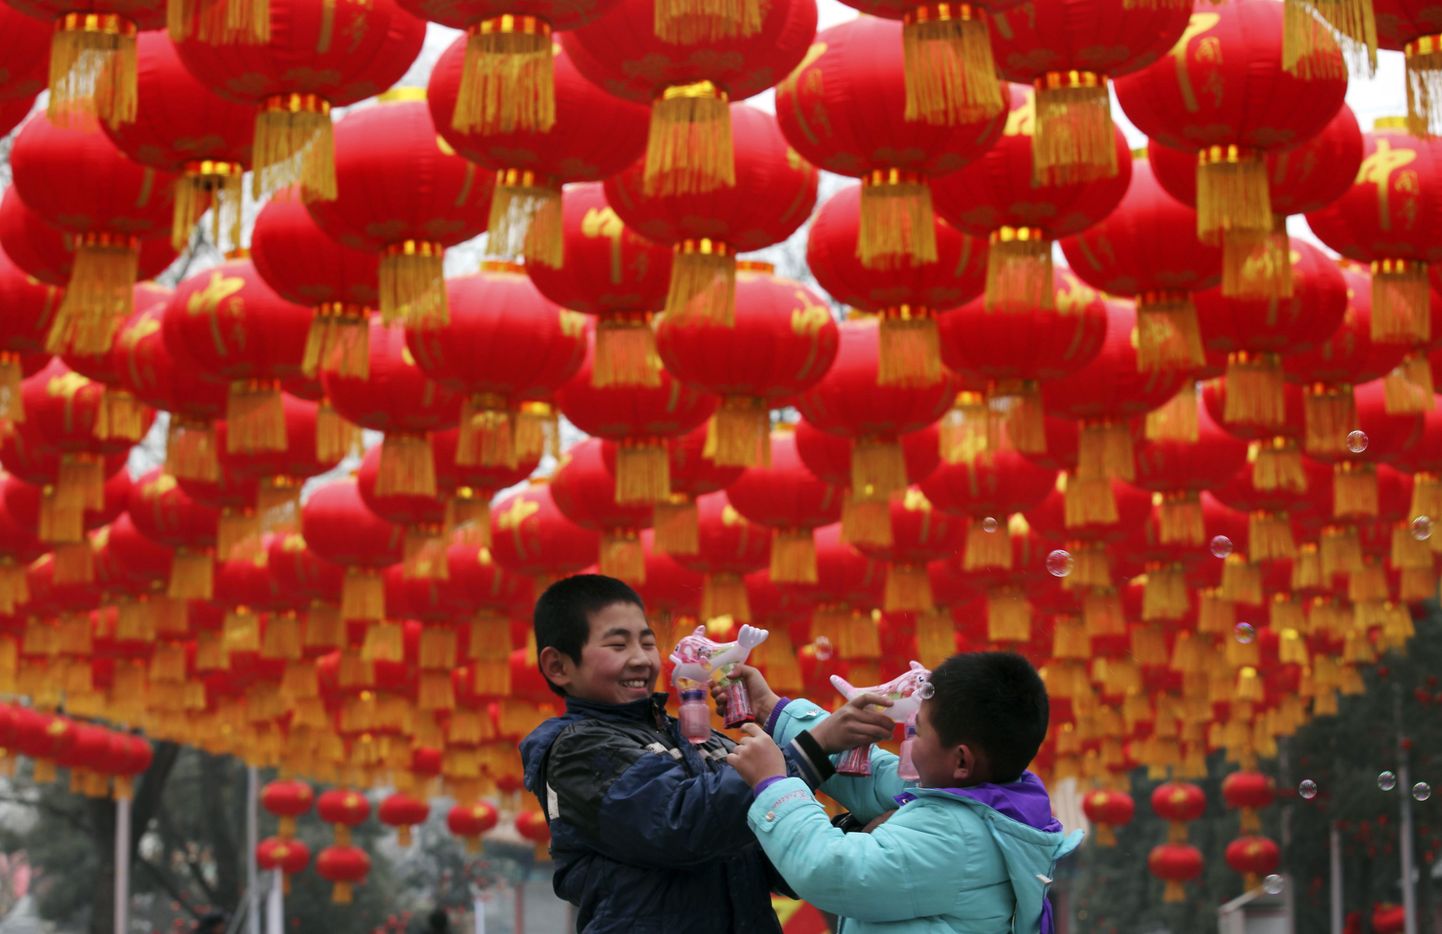 20 fakti Hiina uusaasta tähistamise kohta